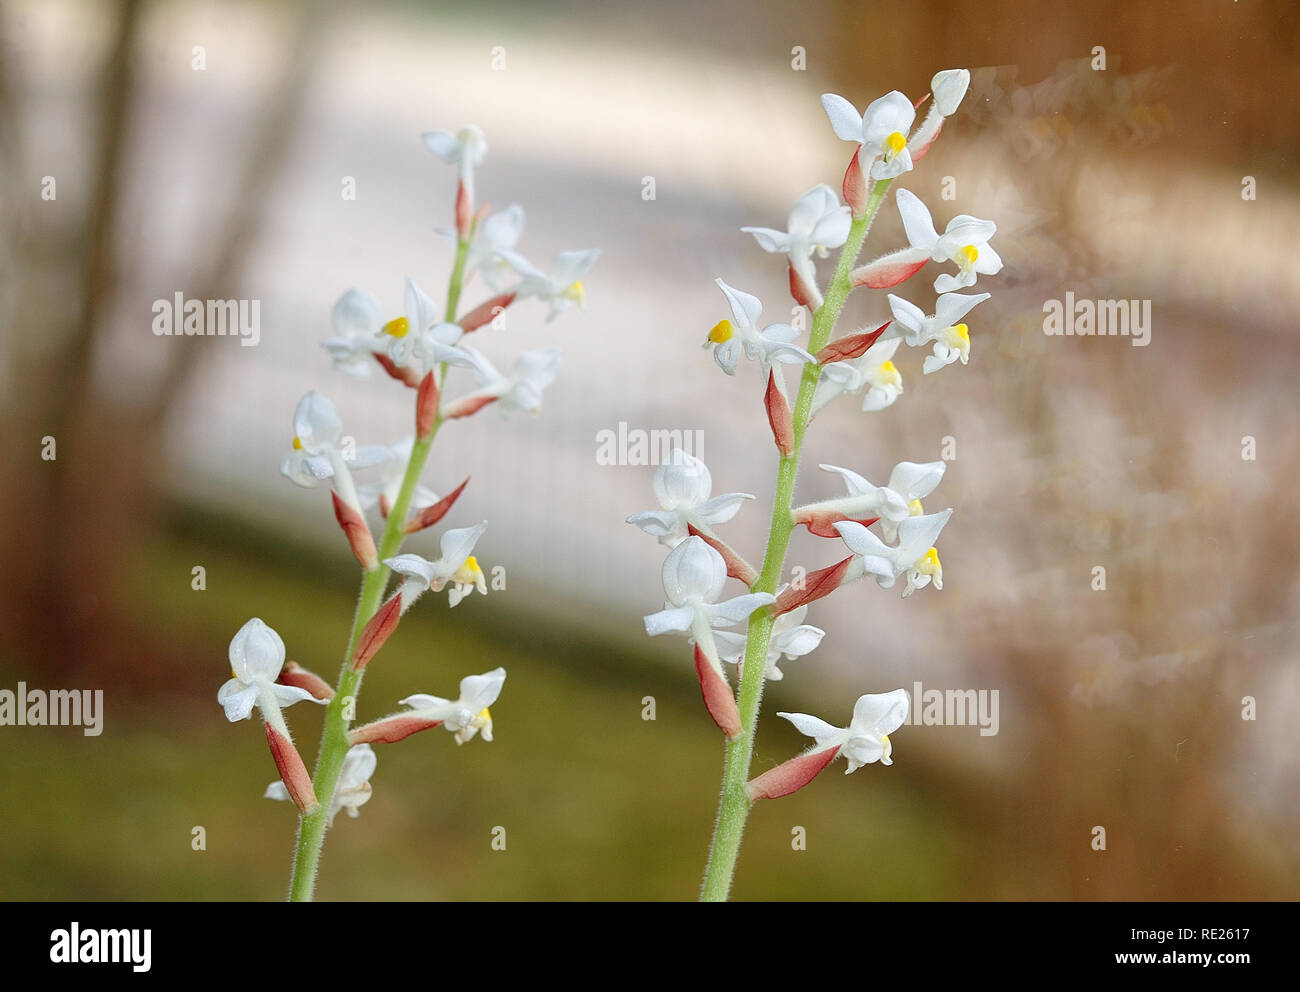 Blütenstände ein Juwel Orchidee mit kleinen weißen Blüten an einem Fenster Stockfoto